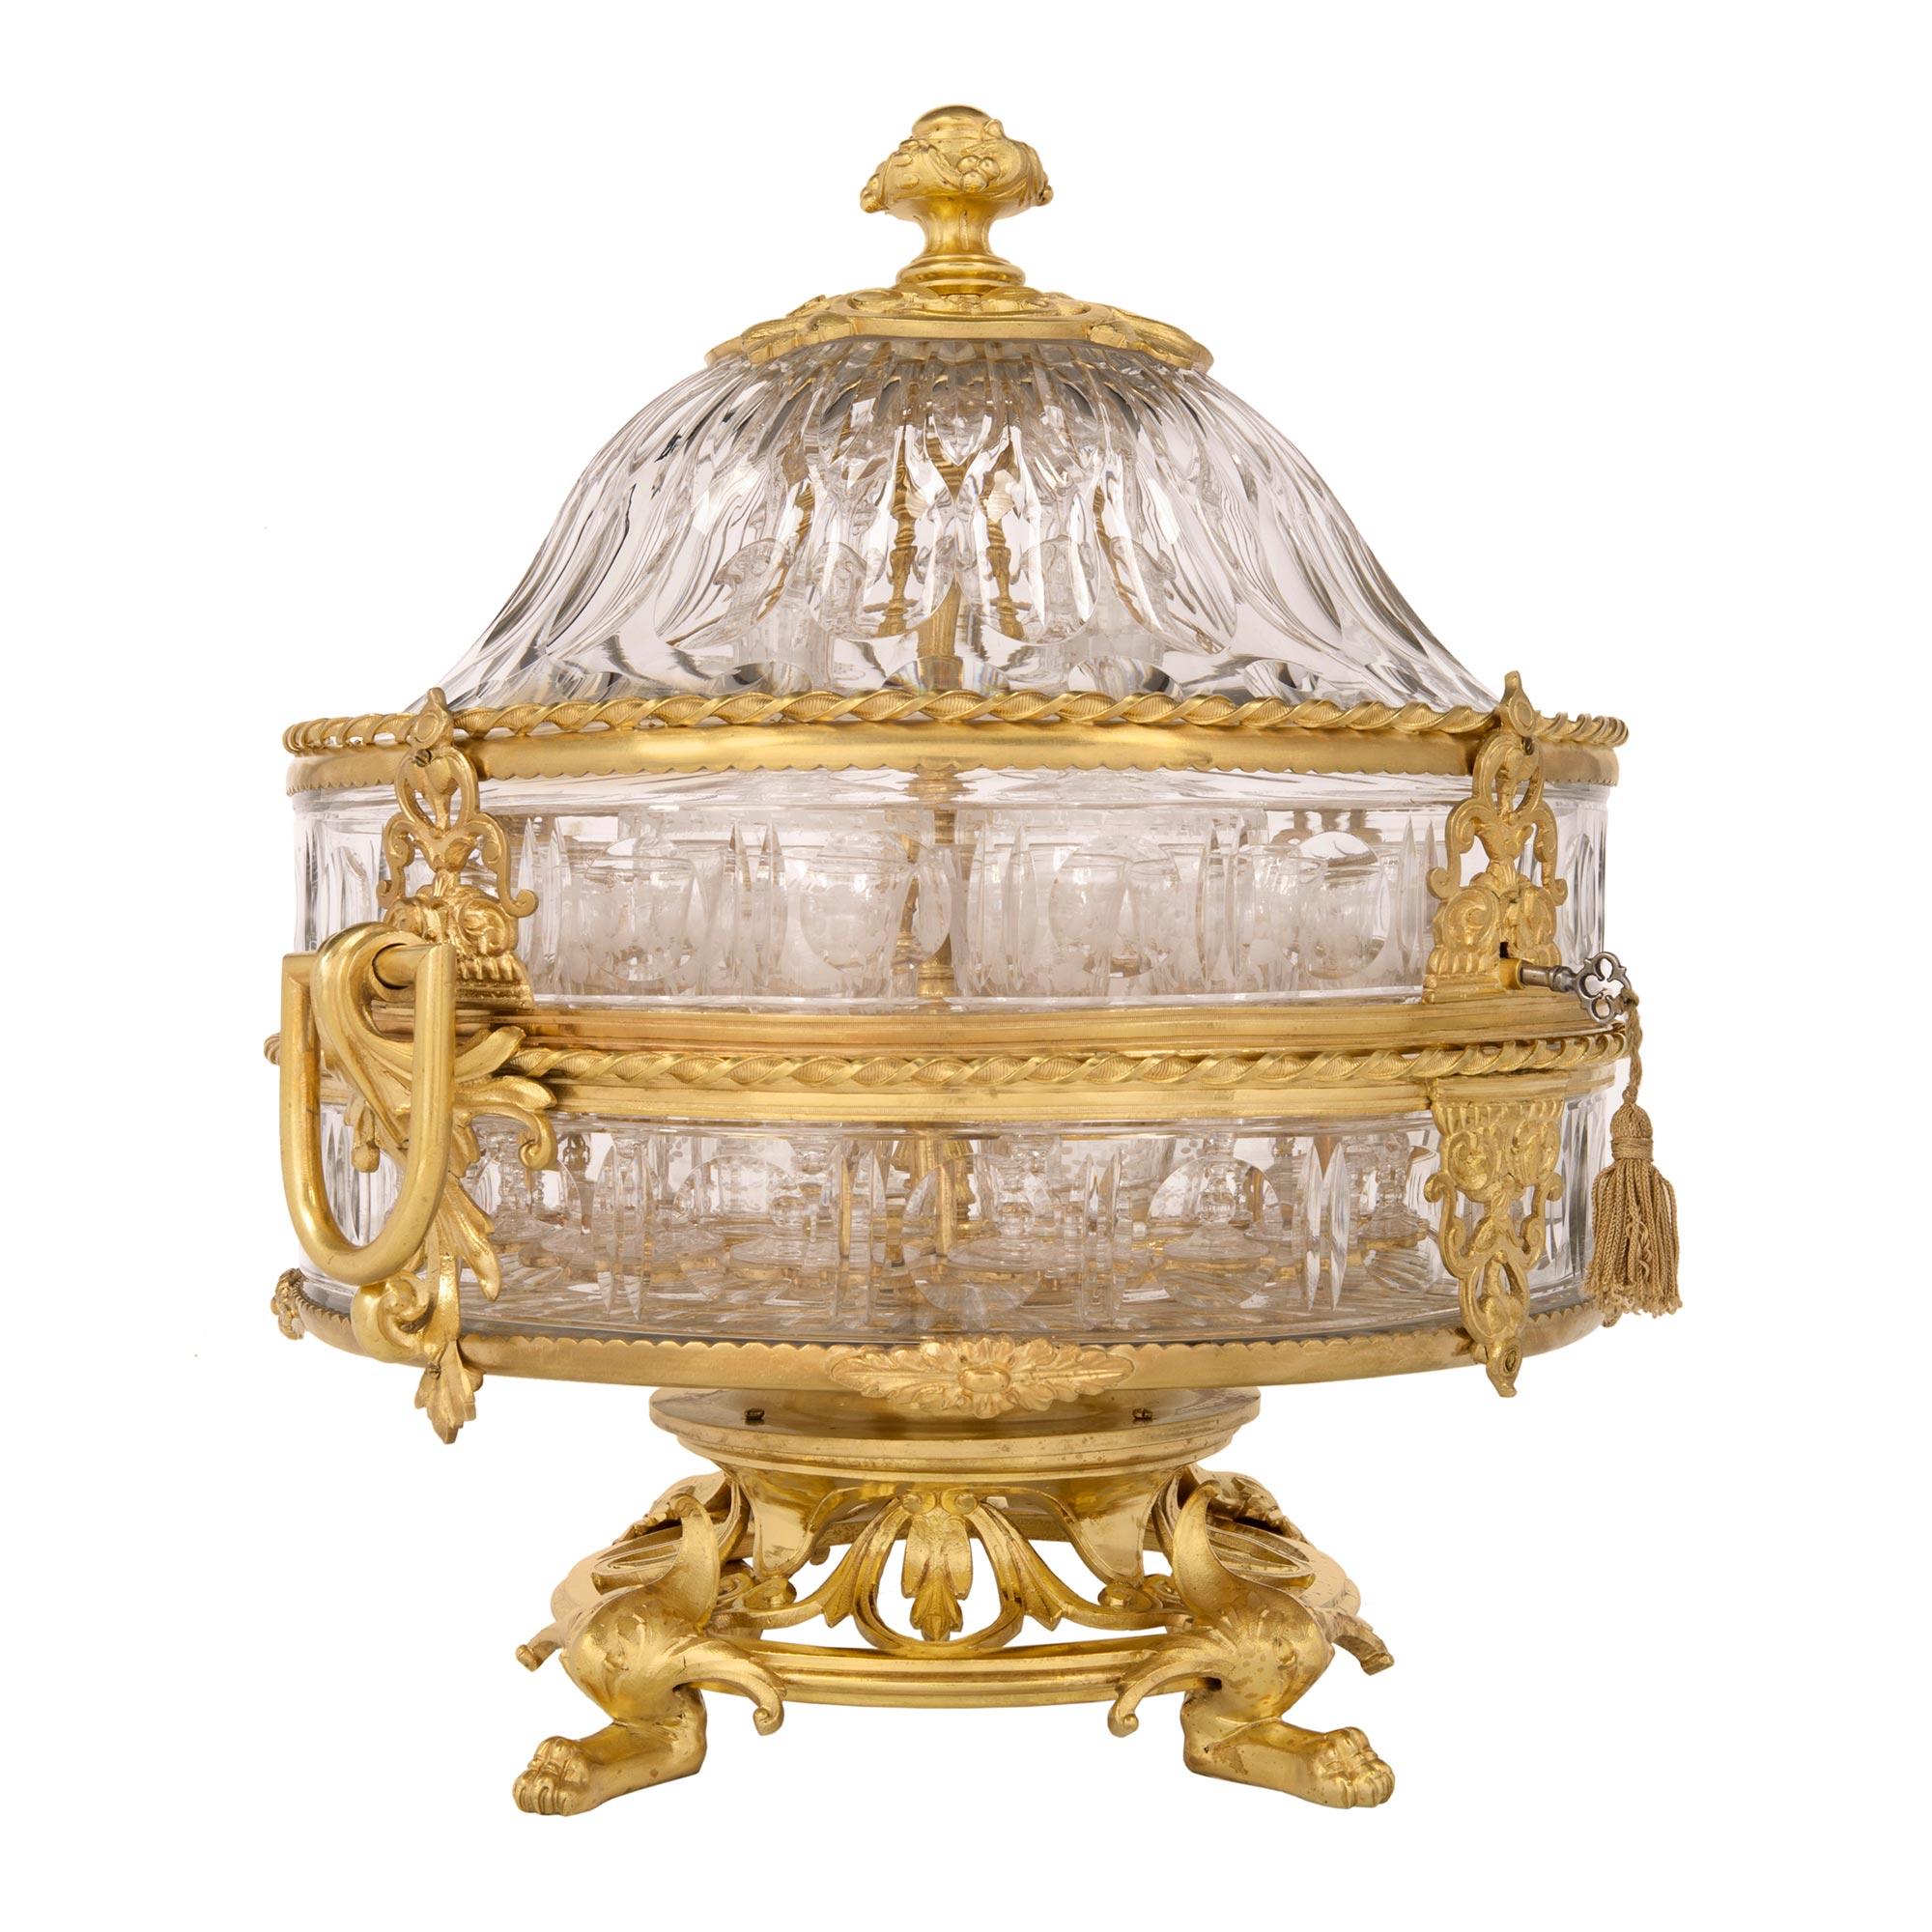 Superbe cave à liqueur en bronze doré et cristal de Baccarat, de style Louis XVI et d'époque Belle Époque, datant du 19e siècle, avec seize verres et quatre carafes. Ce magnifique service à liqueur est surélevé par de beaux pieds à pattes aux motifs